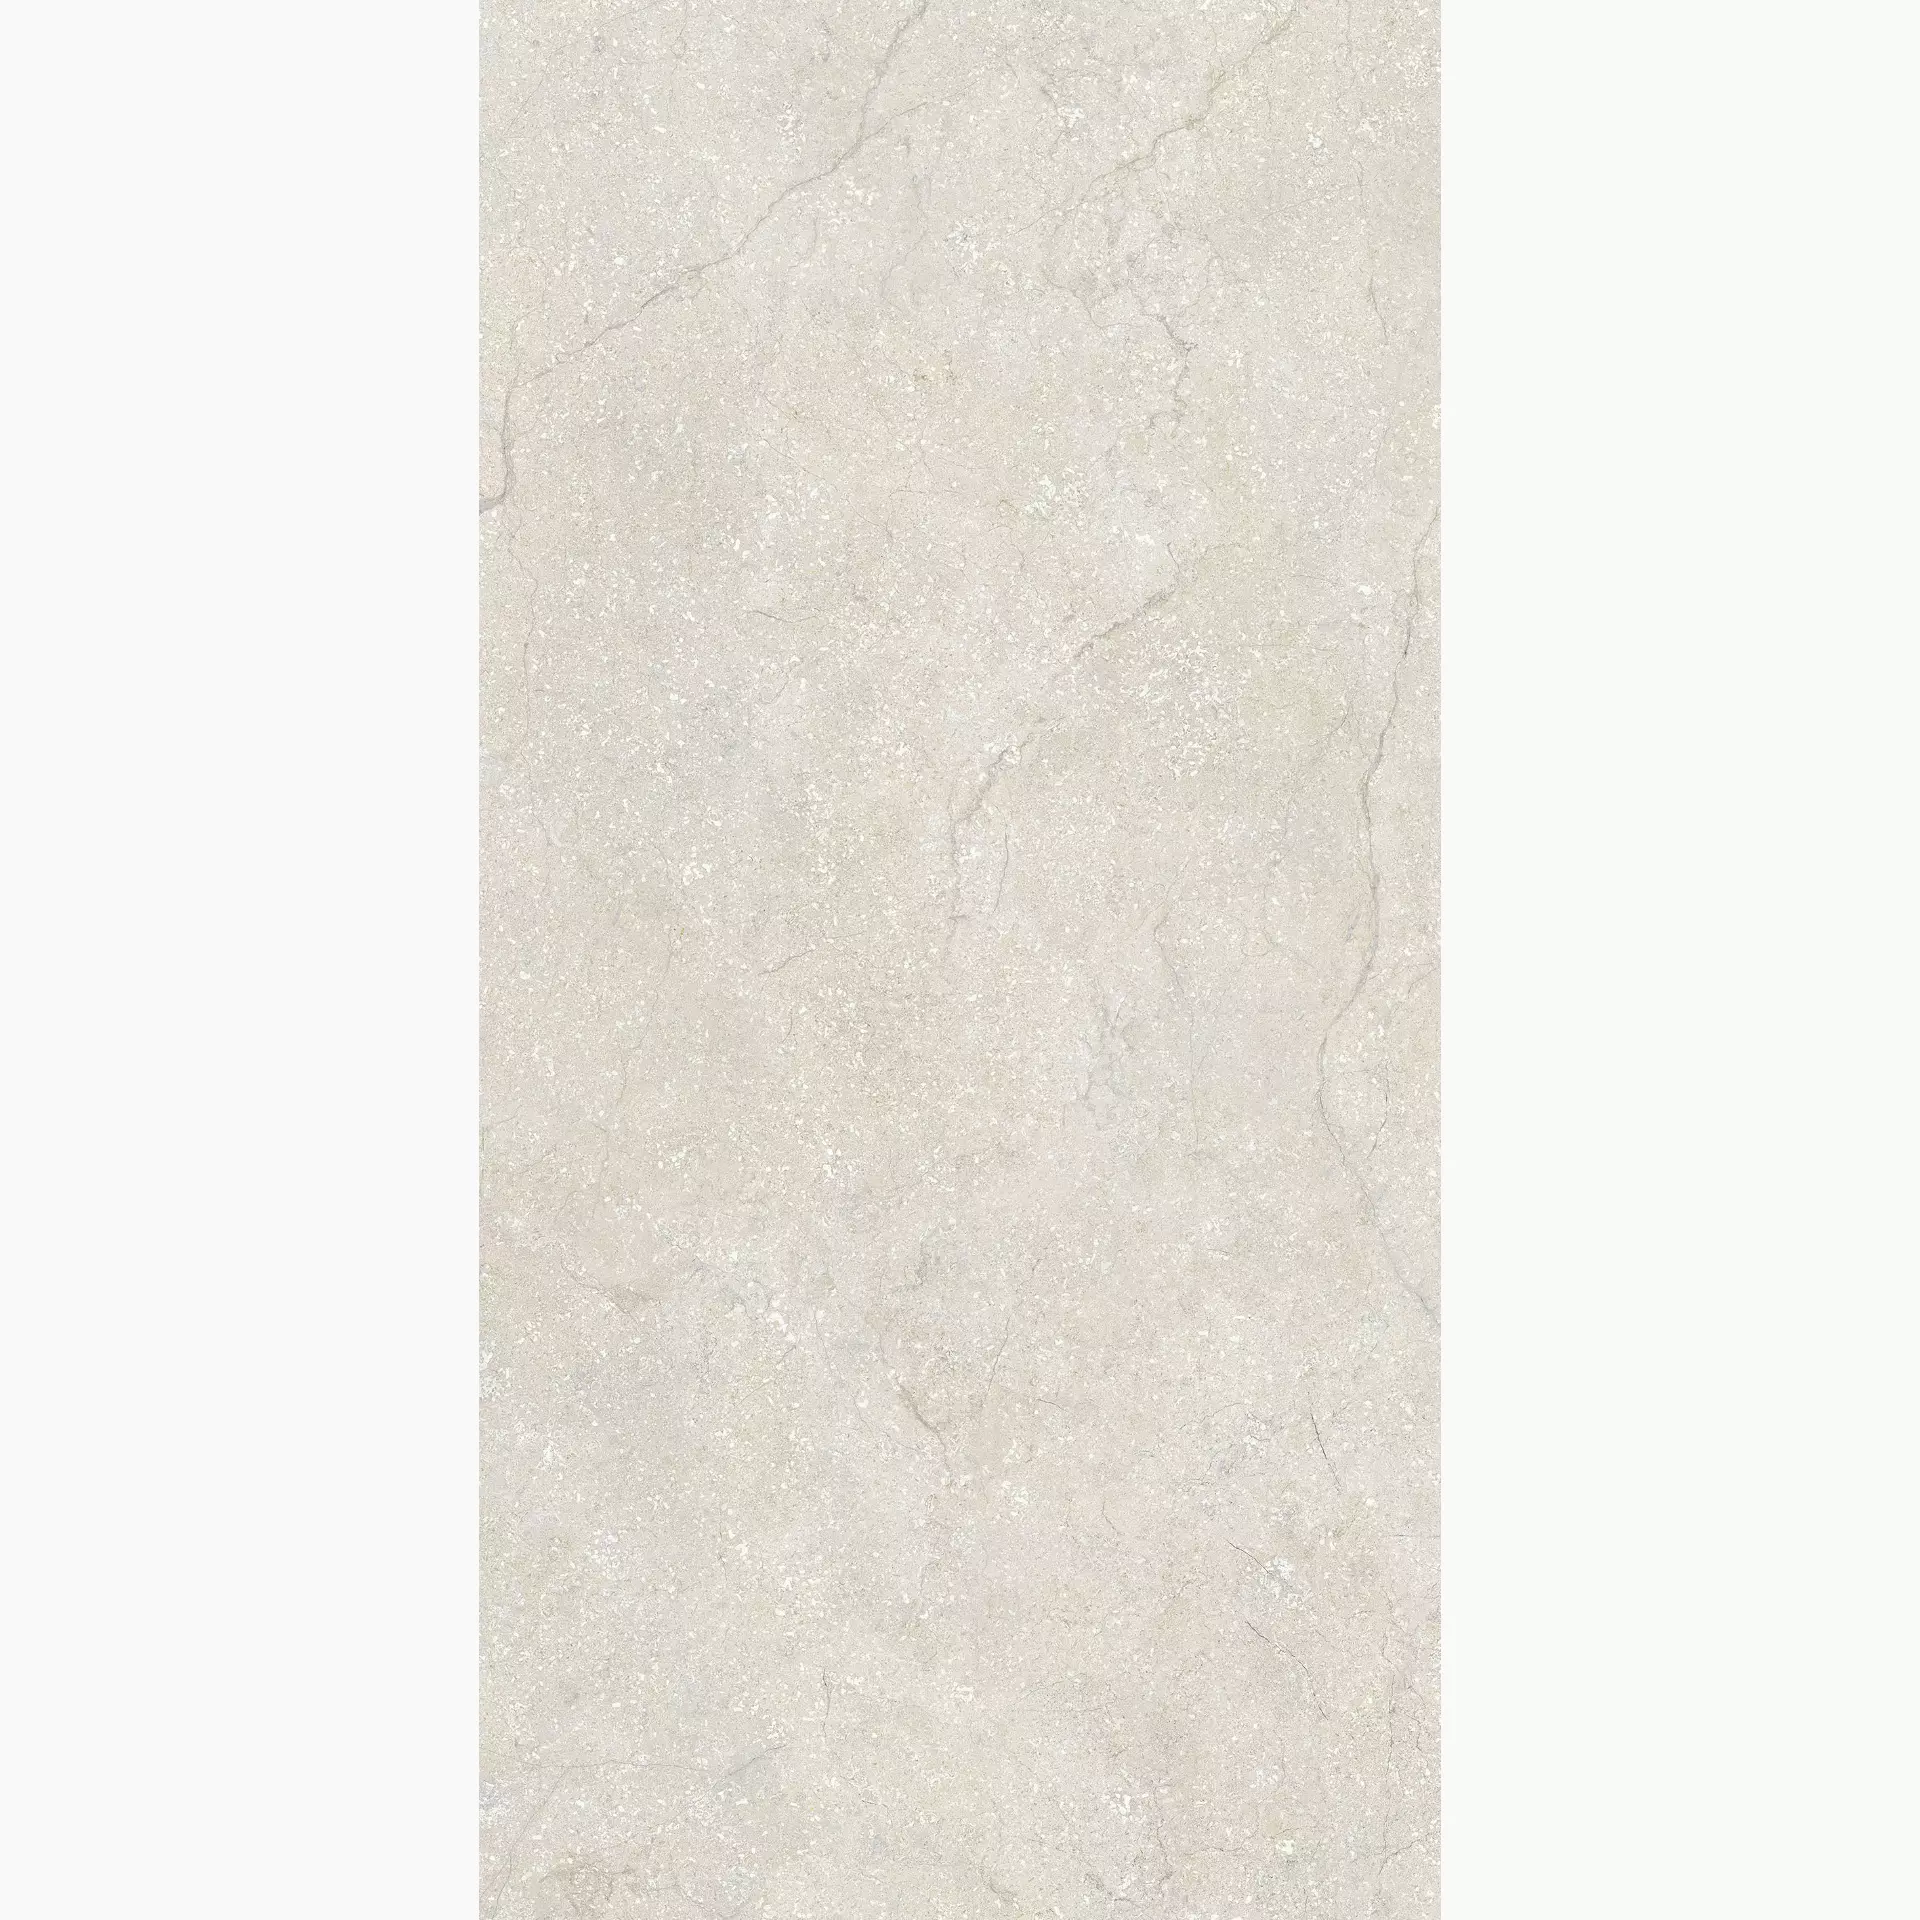 Florim Stone Life Cotton Naturale – Matt Cotton 778957 matt natur 60x120cm rektifiziert 9mm